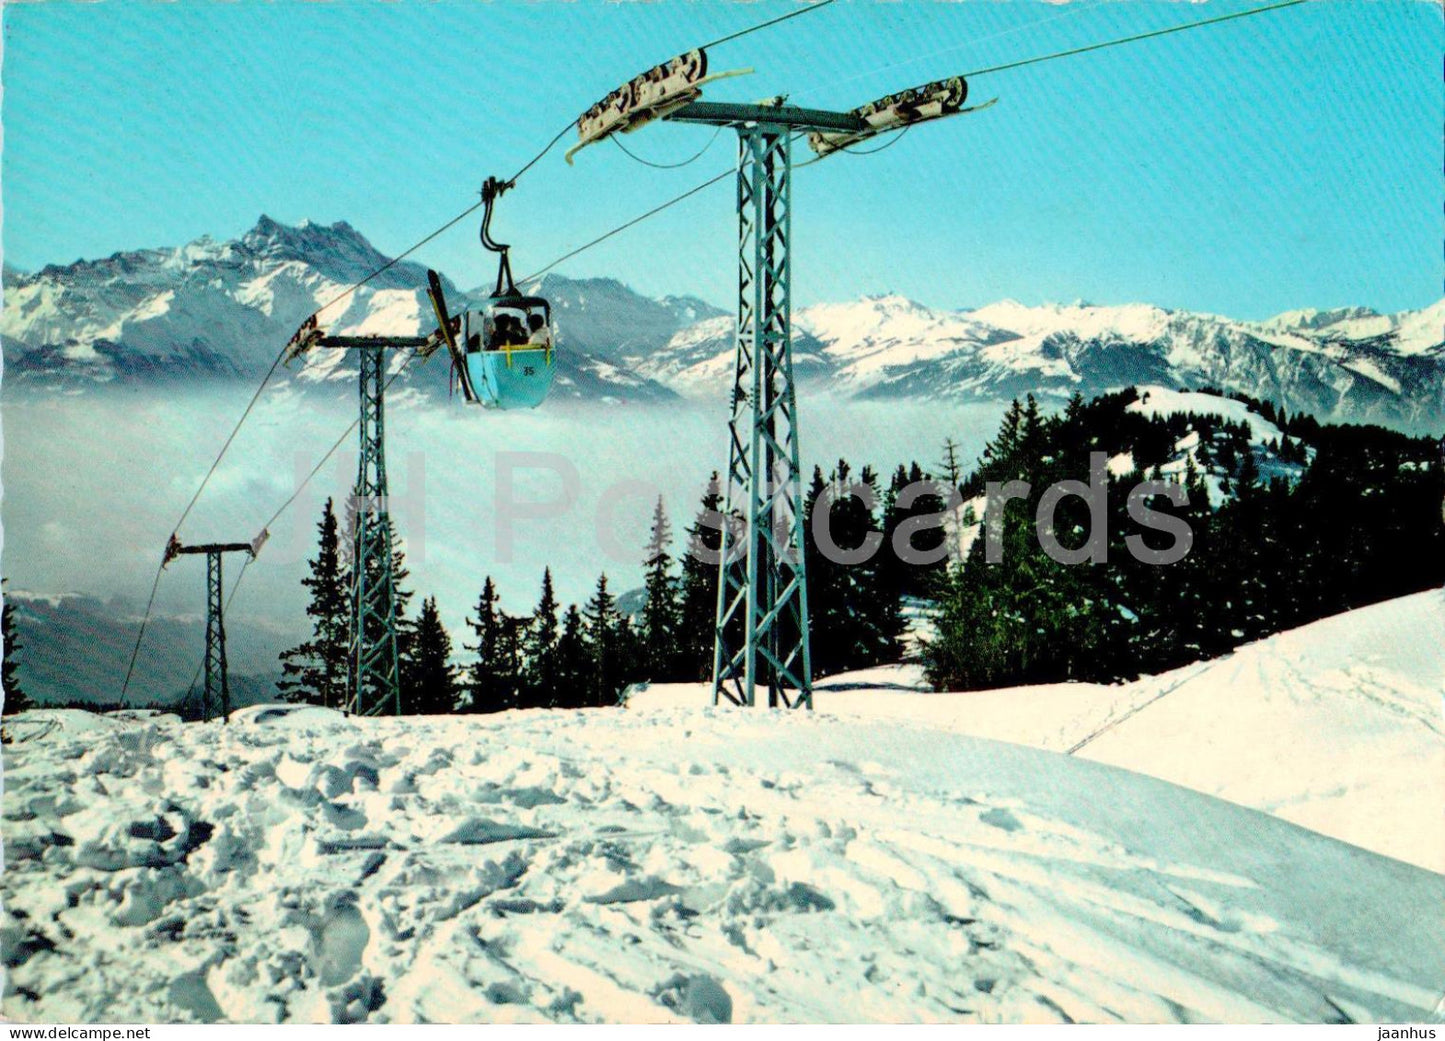 Telecabine Villars Roc d'Orsay - Vue sur les Dents du Midi - cable car - 2718 - 1966 - Switzerland - used - JH Postcards